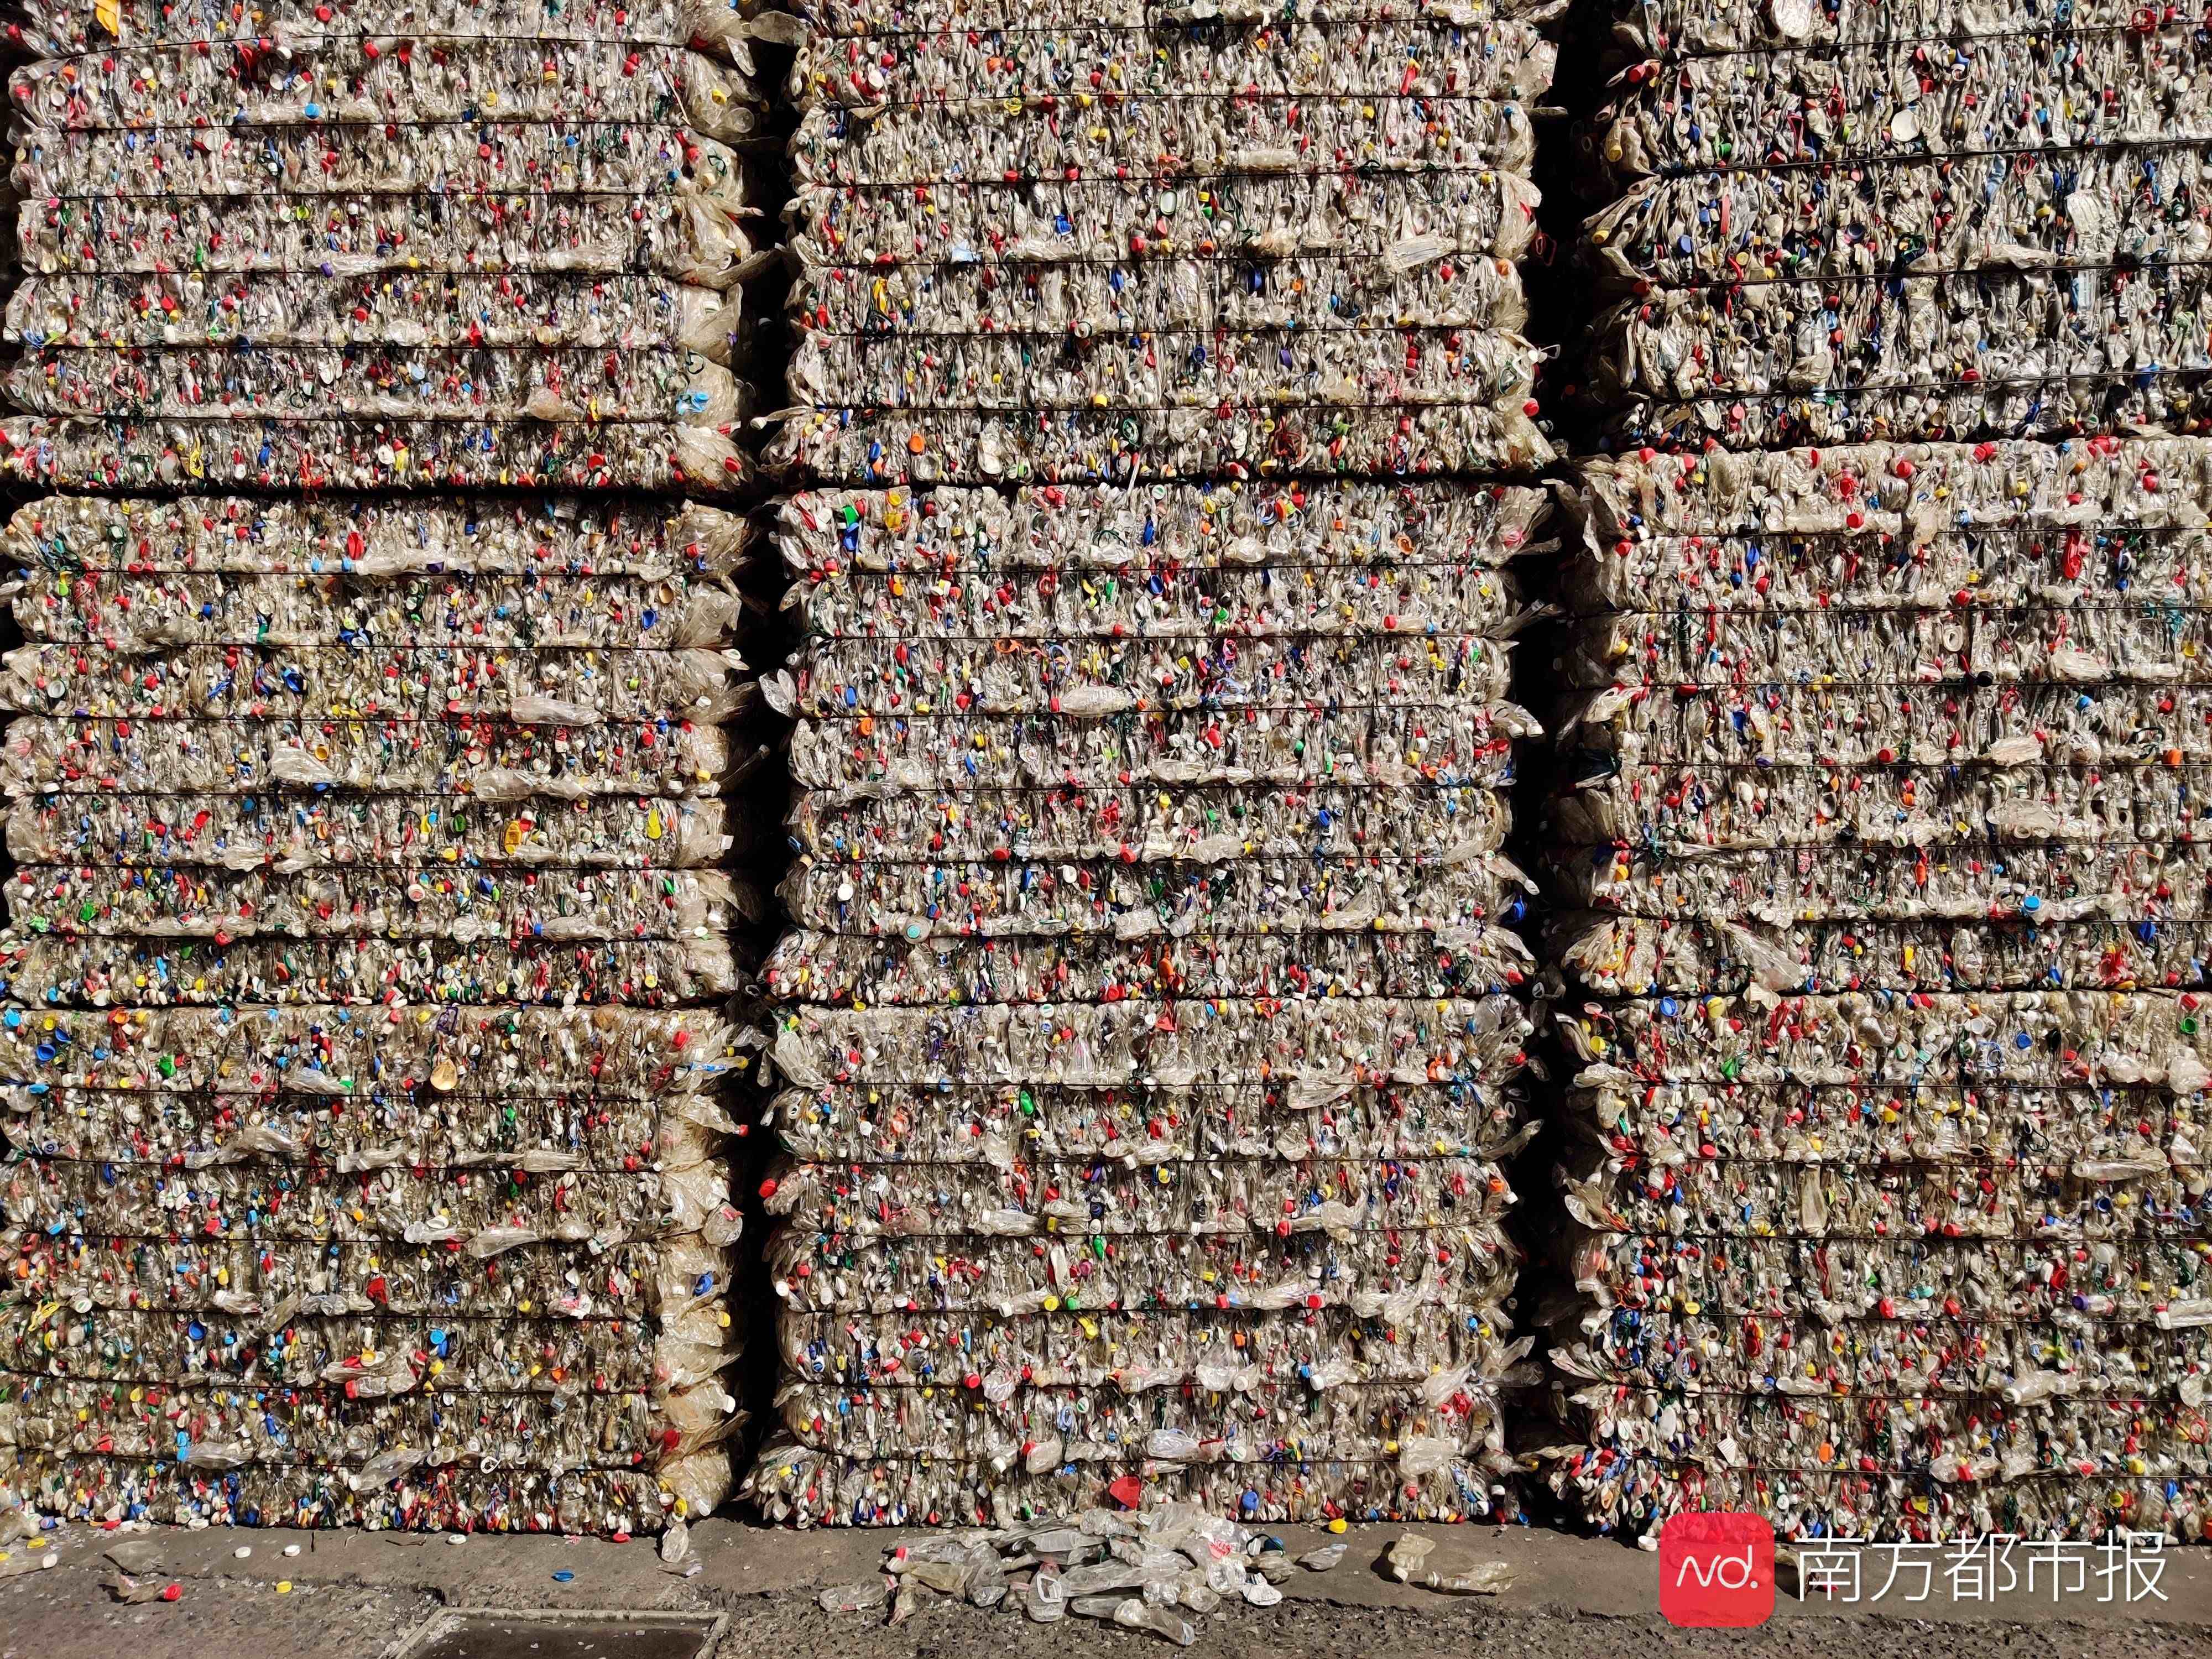 揭秘废弃塑料如何“重生”，经回收利用成为衣服、瓶子、零件……